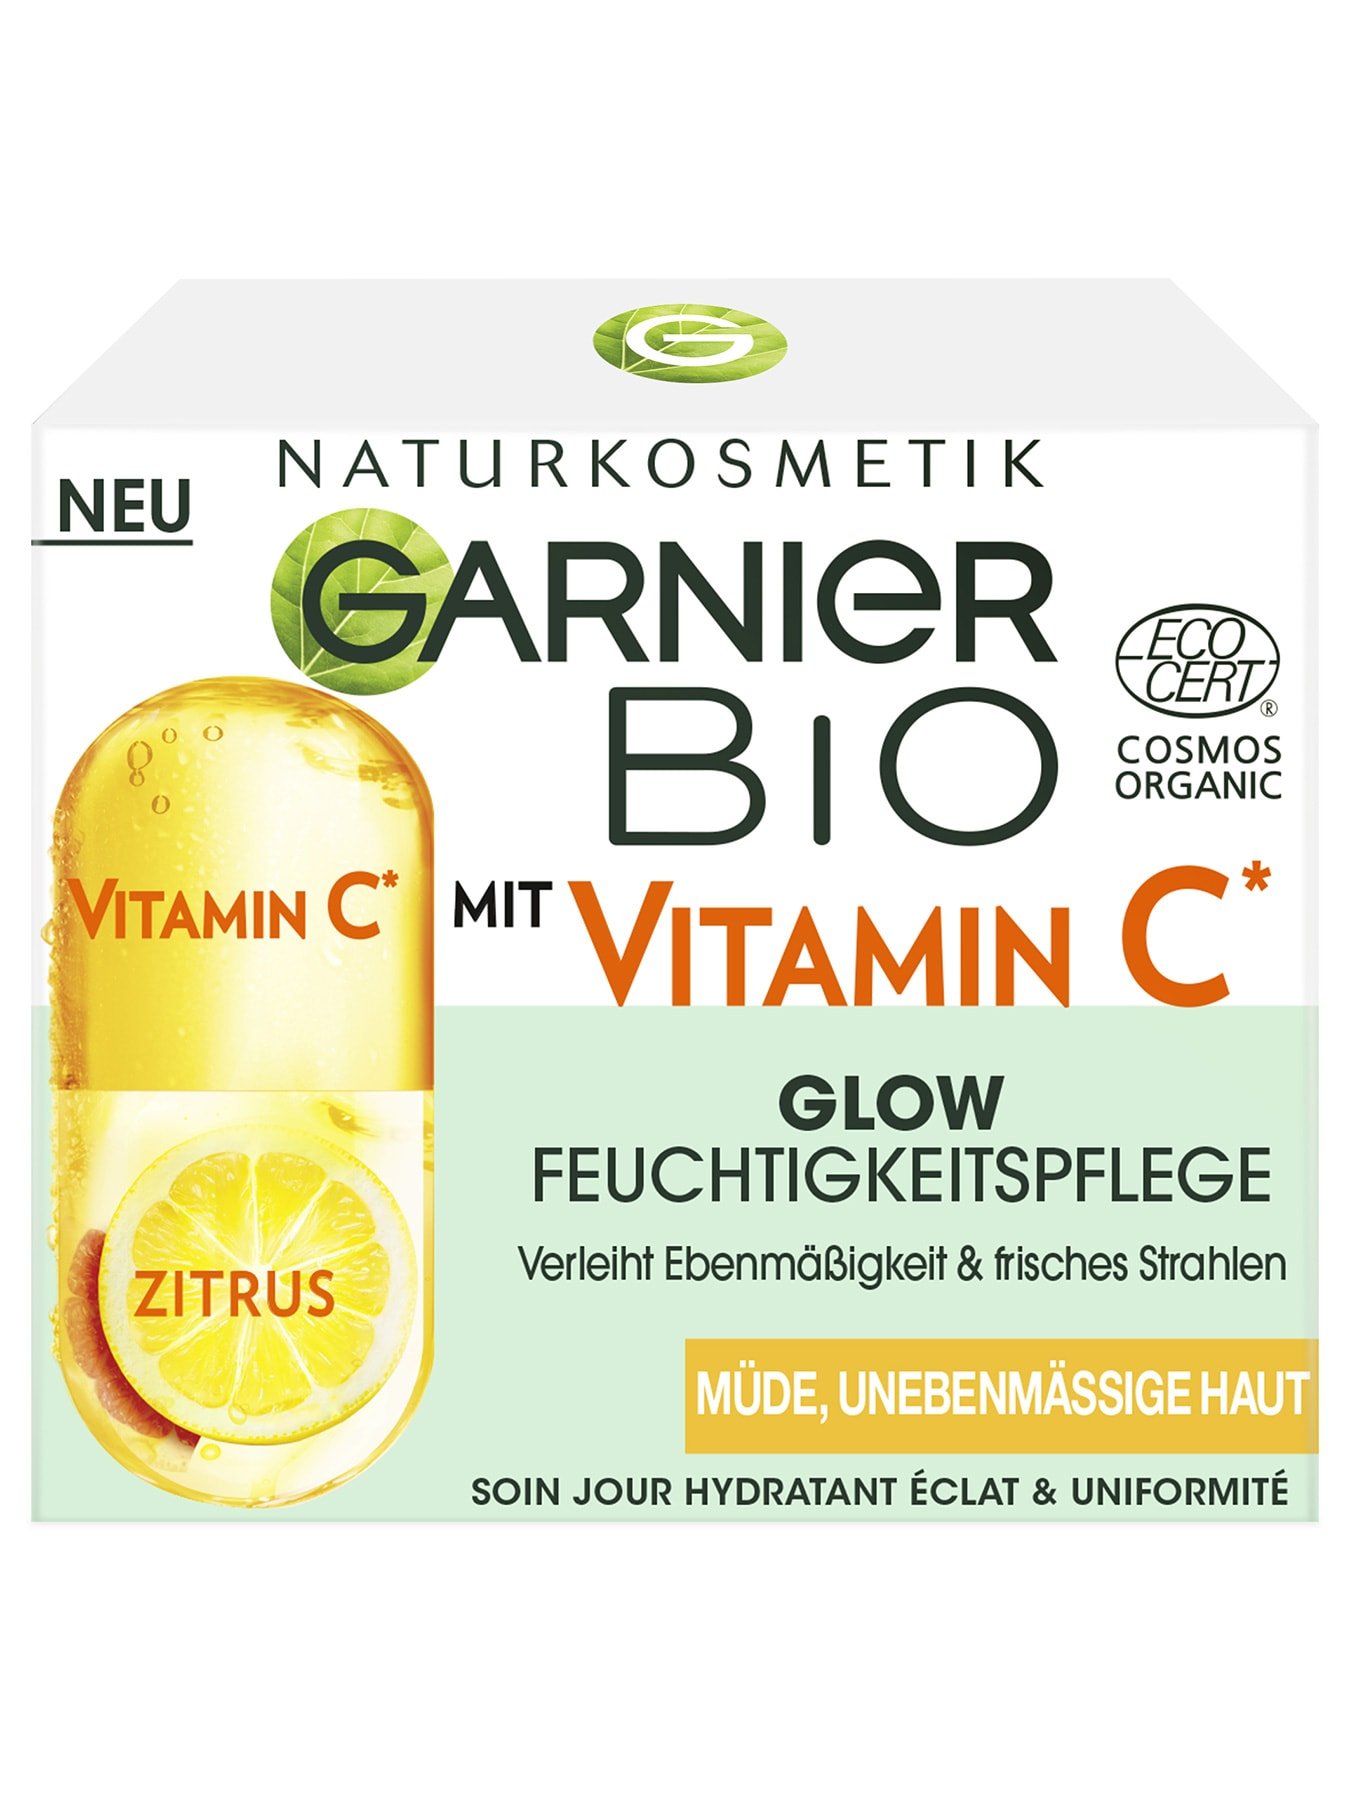 Garnier-Bio-Vitamin-C-Glow-Cream-Pack-Front